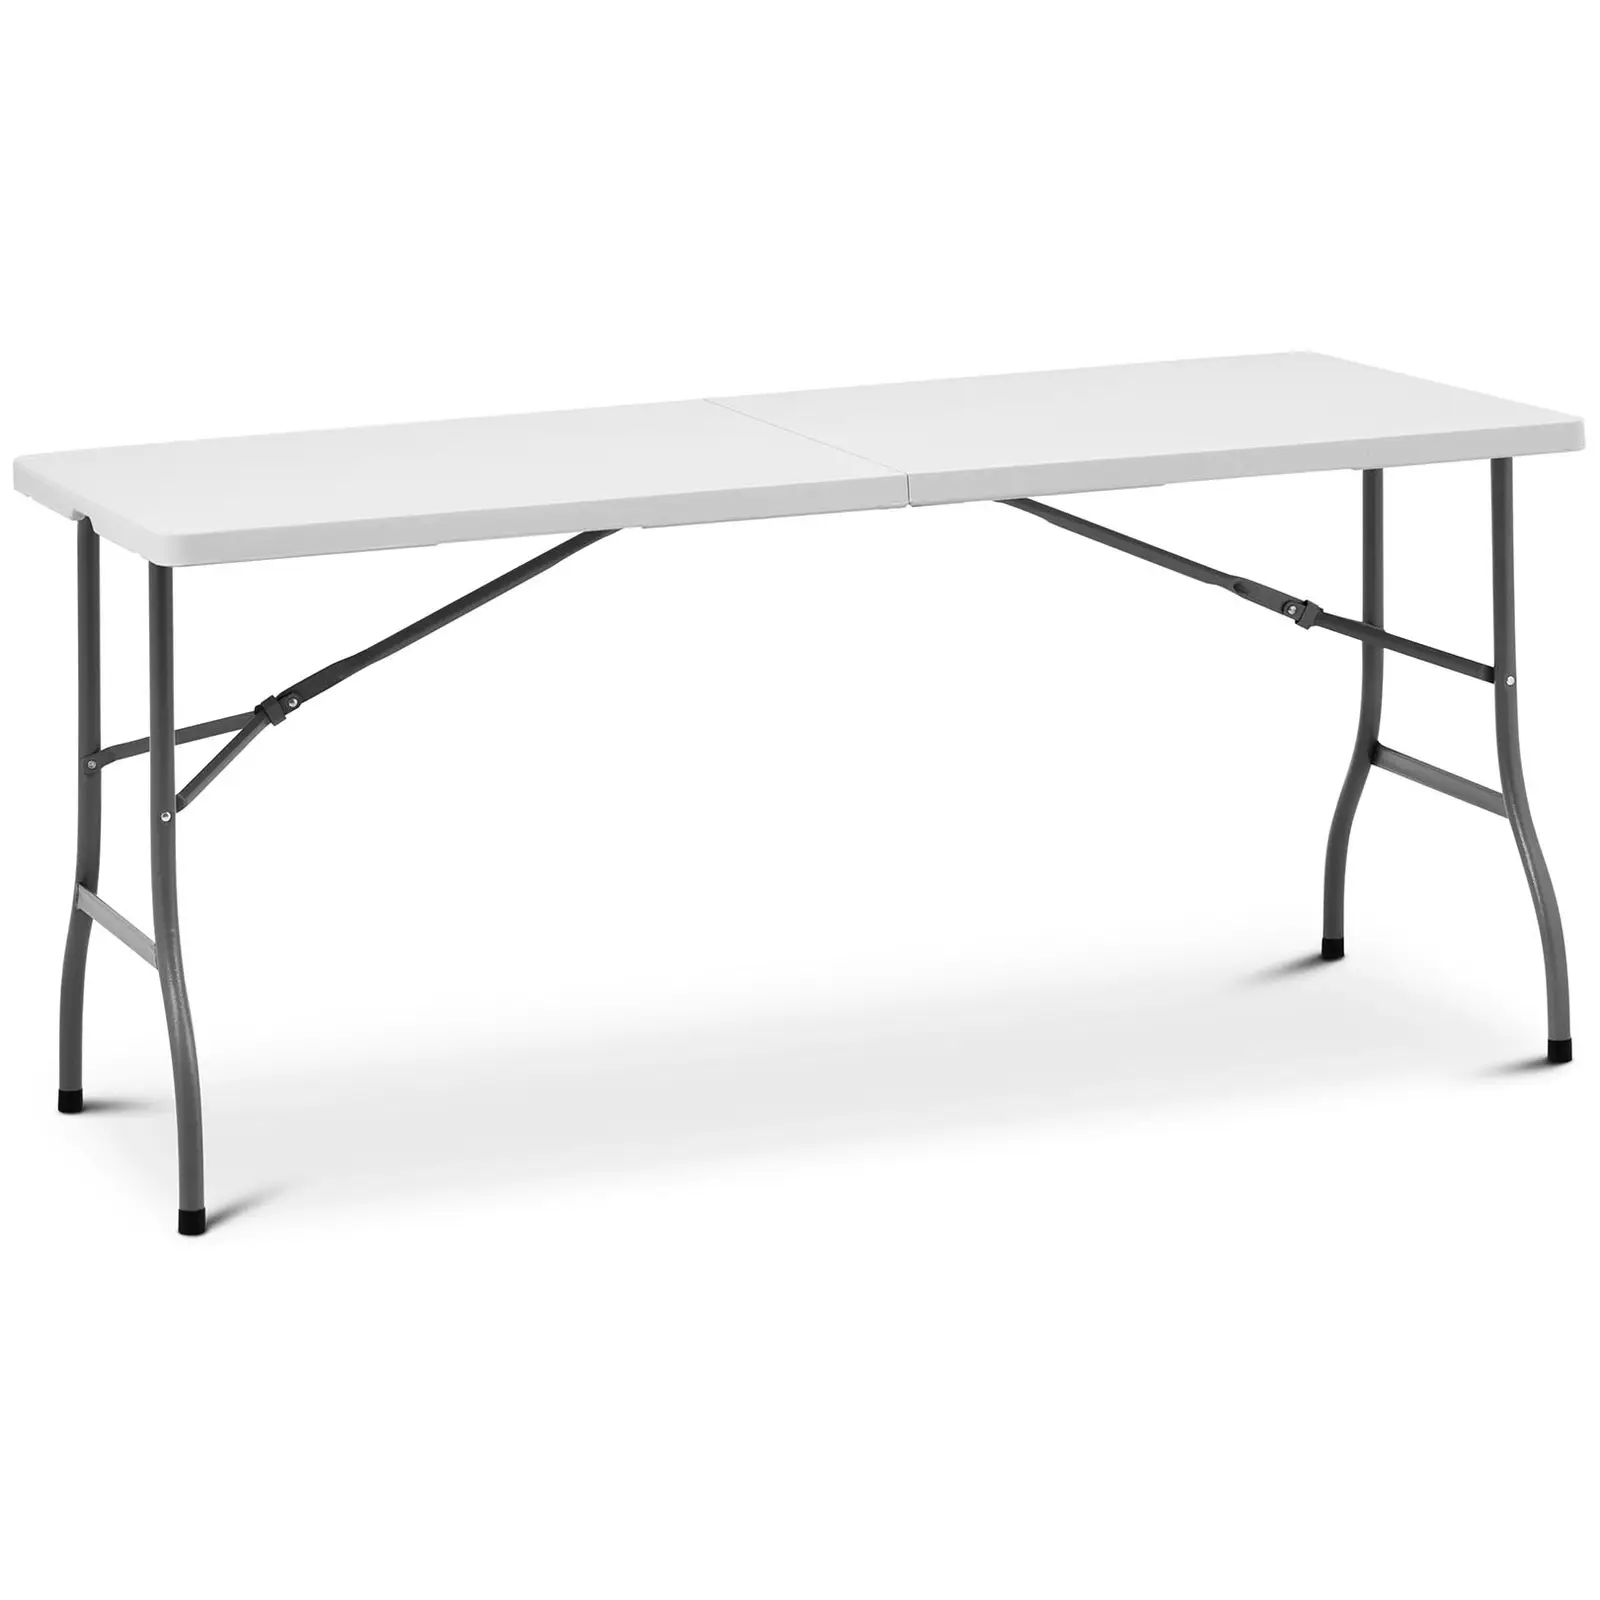 Table pliante - 1 520 x 700 x 740 mm - Royal Catering - 150 kg - Intérieur/extérieur - Whitehe